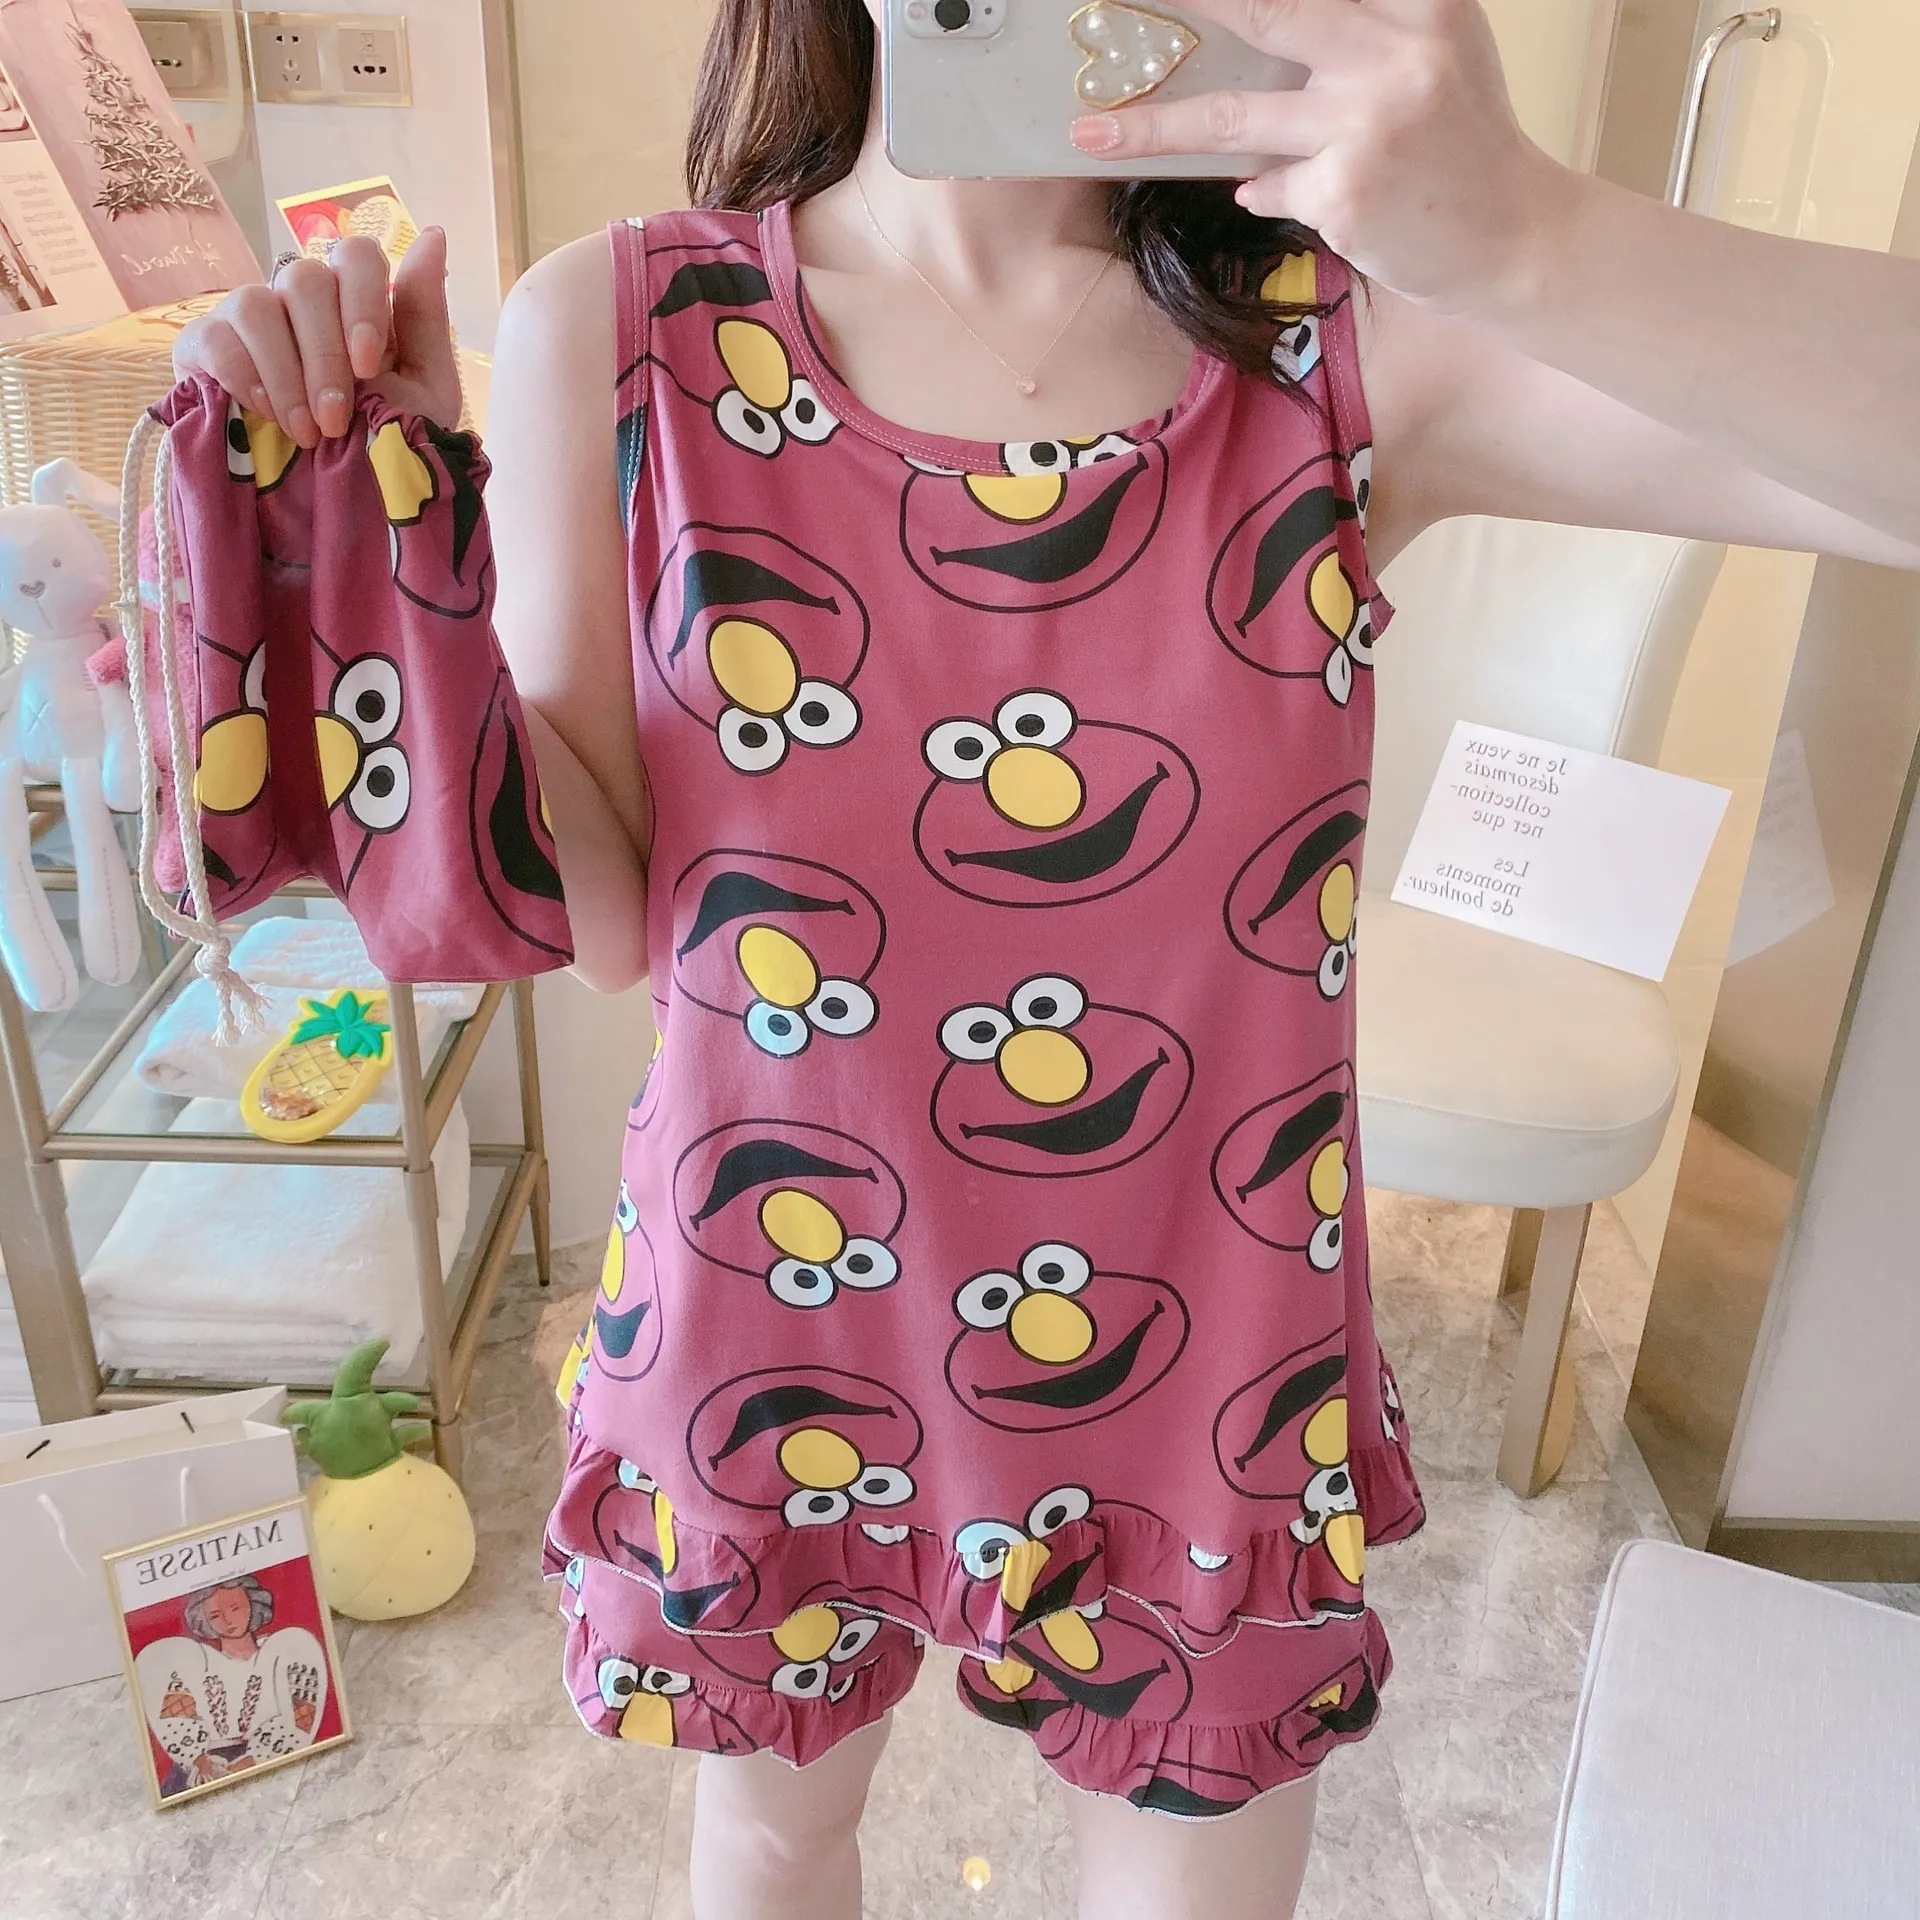 2019 новый сладкий хлопок женские пижамы животных печать маленький кот крытый одежда домашний костюм пижамы зимняя пижама женщина пижама y200708